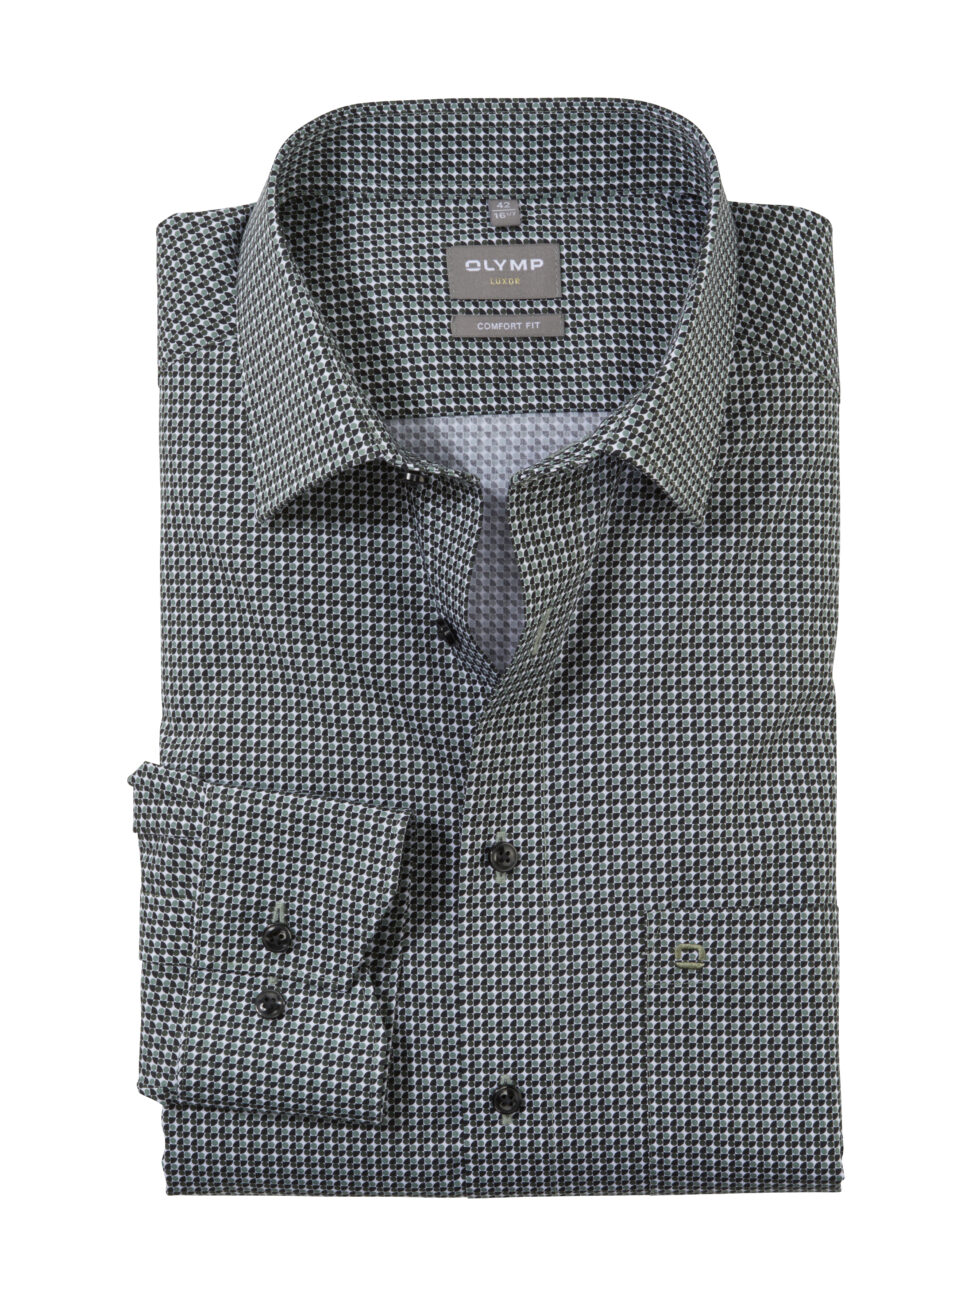 Koszula OLYMP Luxor comfort fit / Minimalistyczny  oliwkowy design / New Kent / 11164447